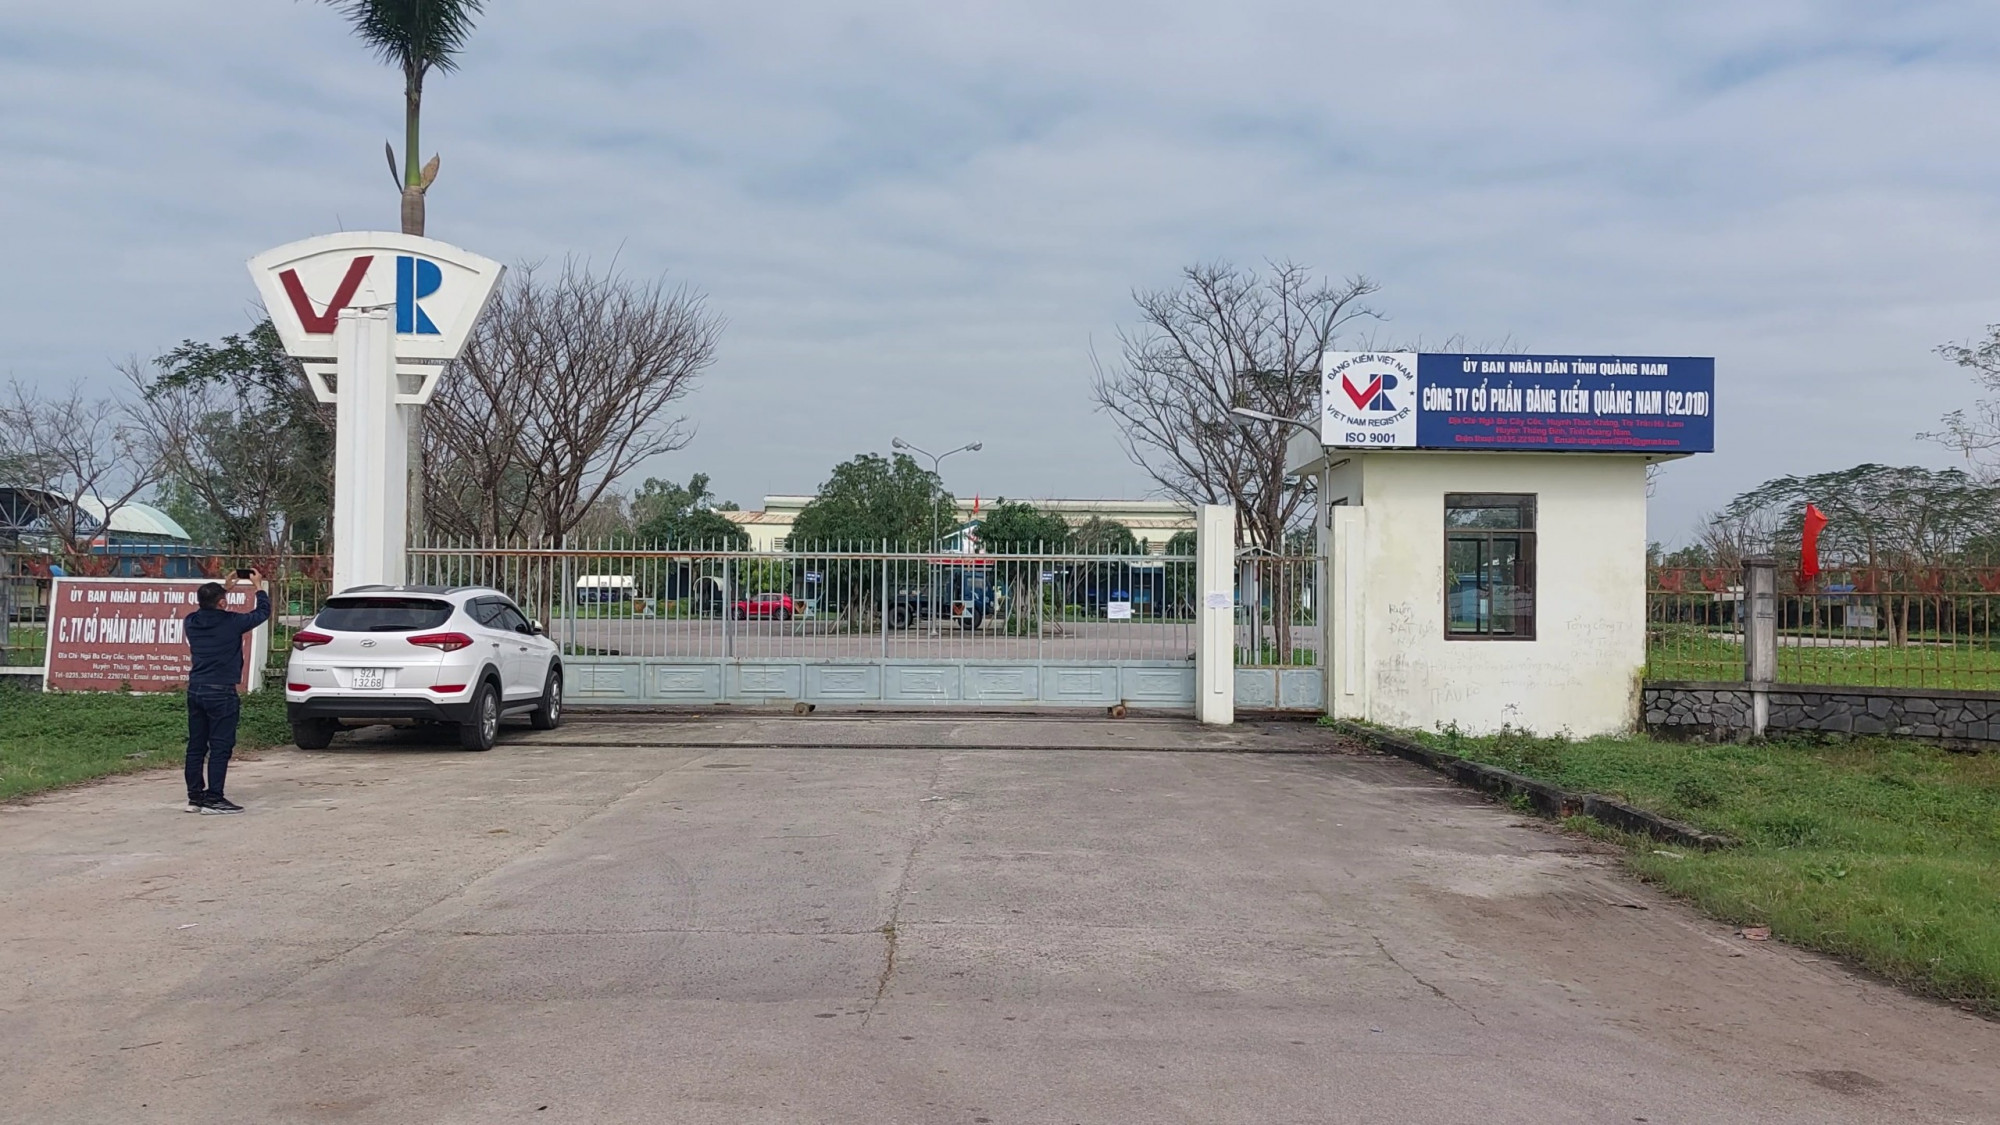 Cơ quan Cảnh sát điều tra tỉnh Quảng Nam đã khởi tố vụ án, bắt tạm giam 6 cán bộ của Trung tâm đăng kiểm 9201D- Quảng Nam về tội Môi giới hối lộ và Nhận hối lộ